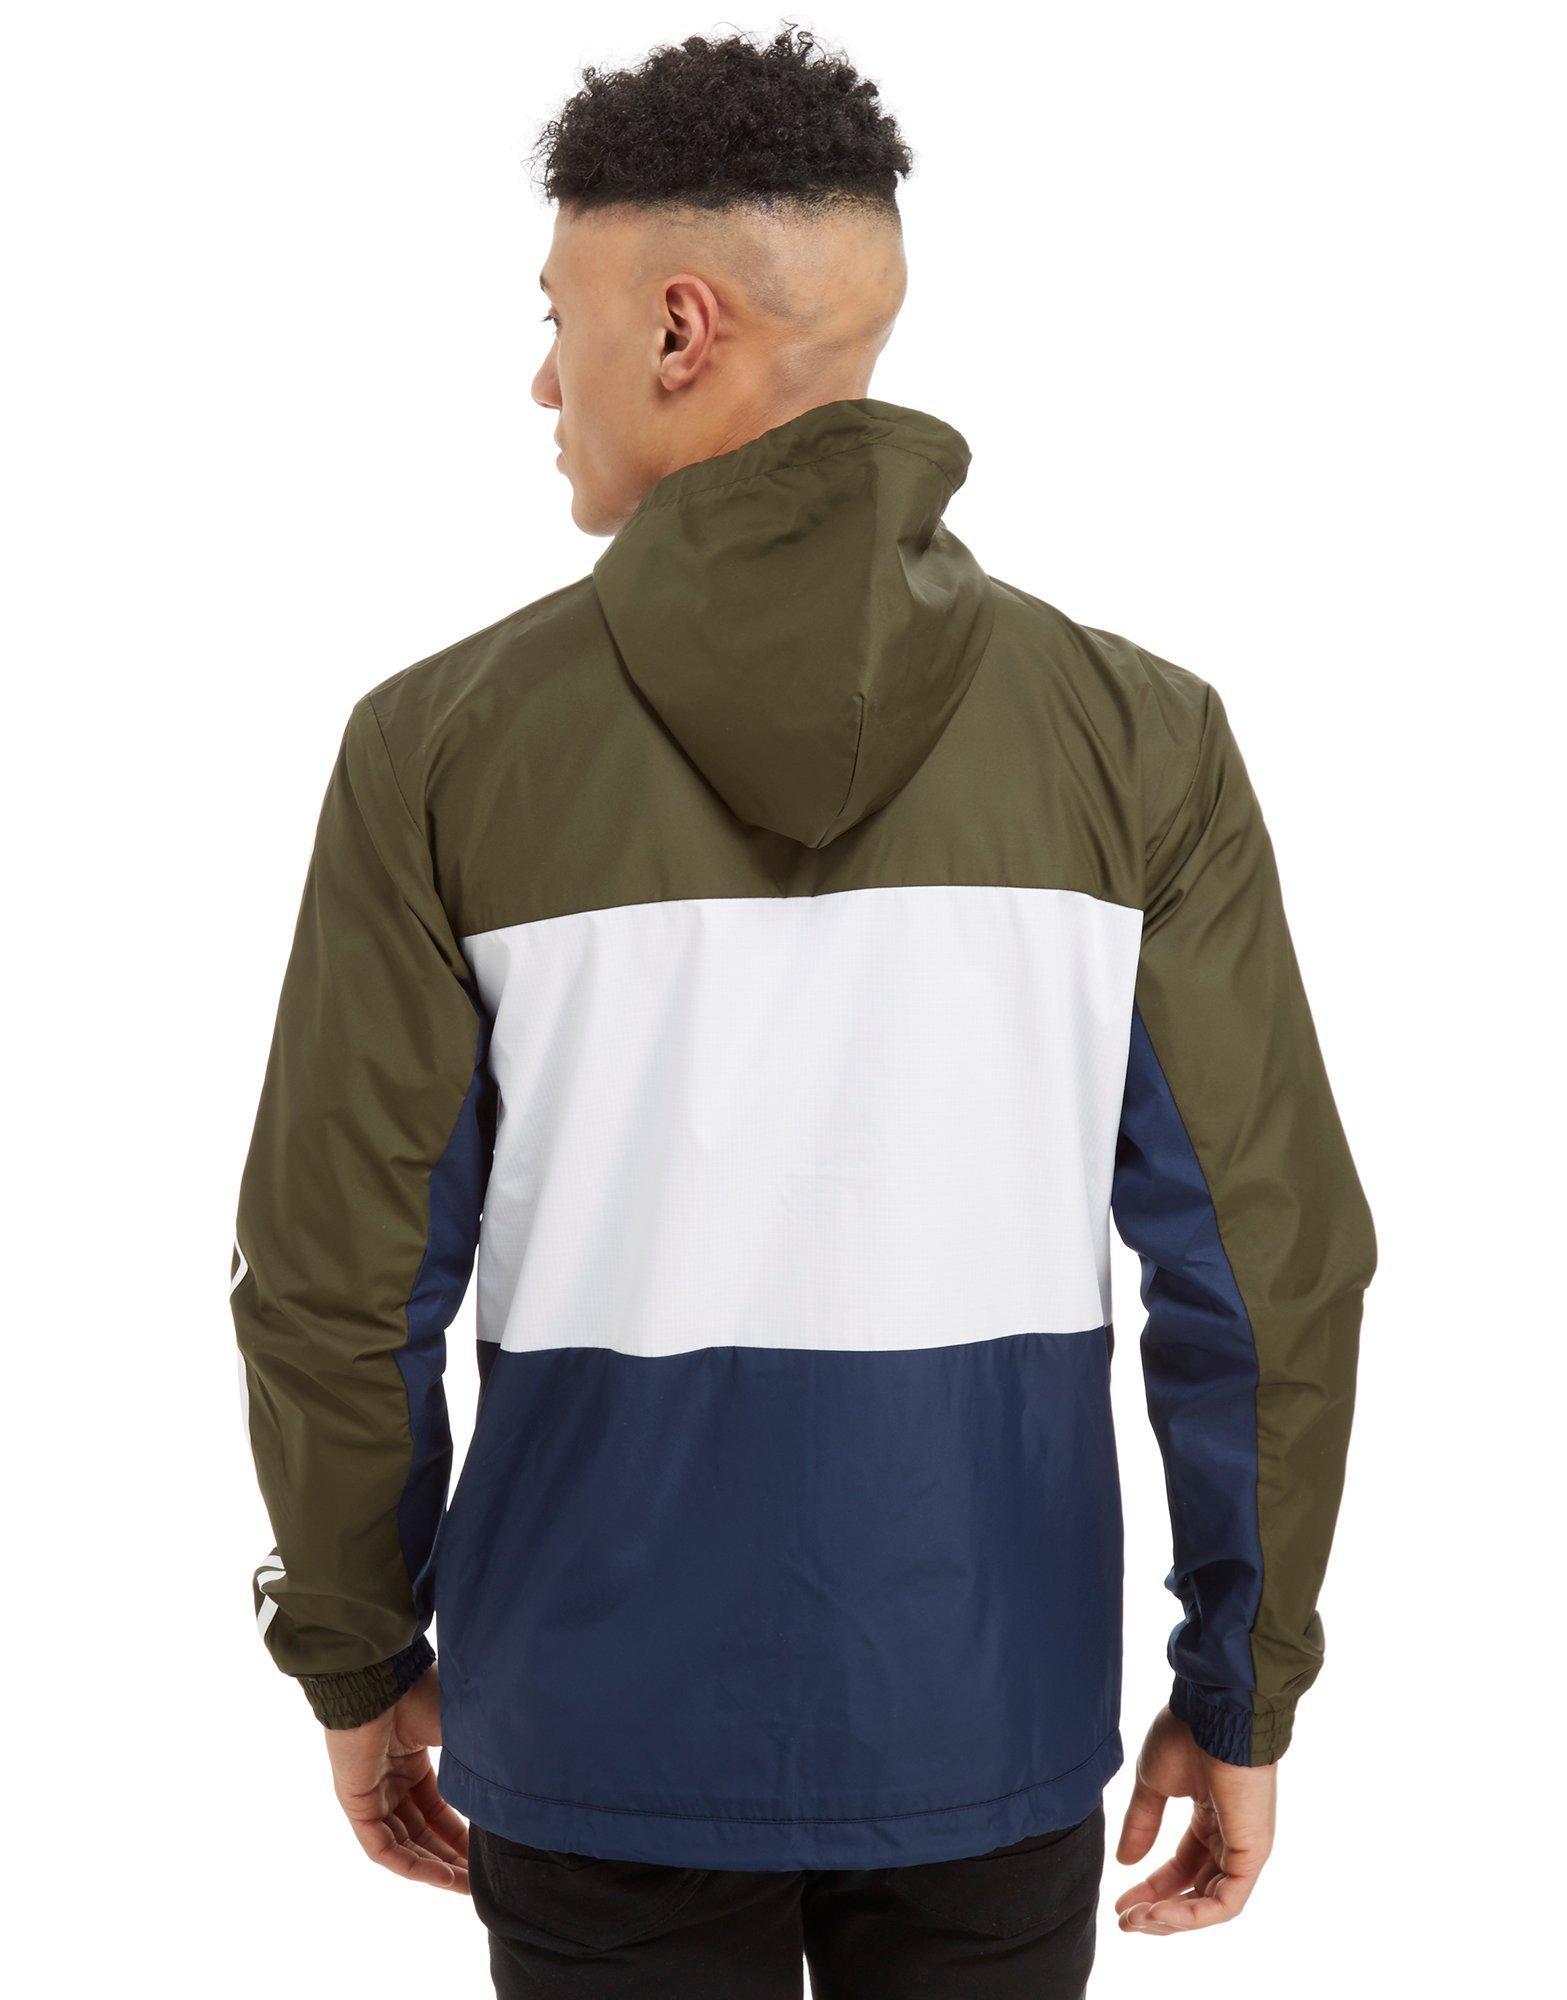 adidas id96 windbreaker jacket